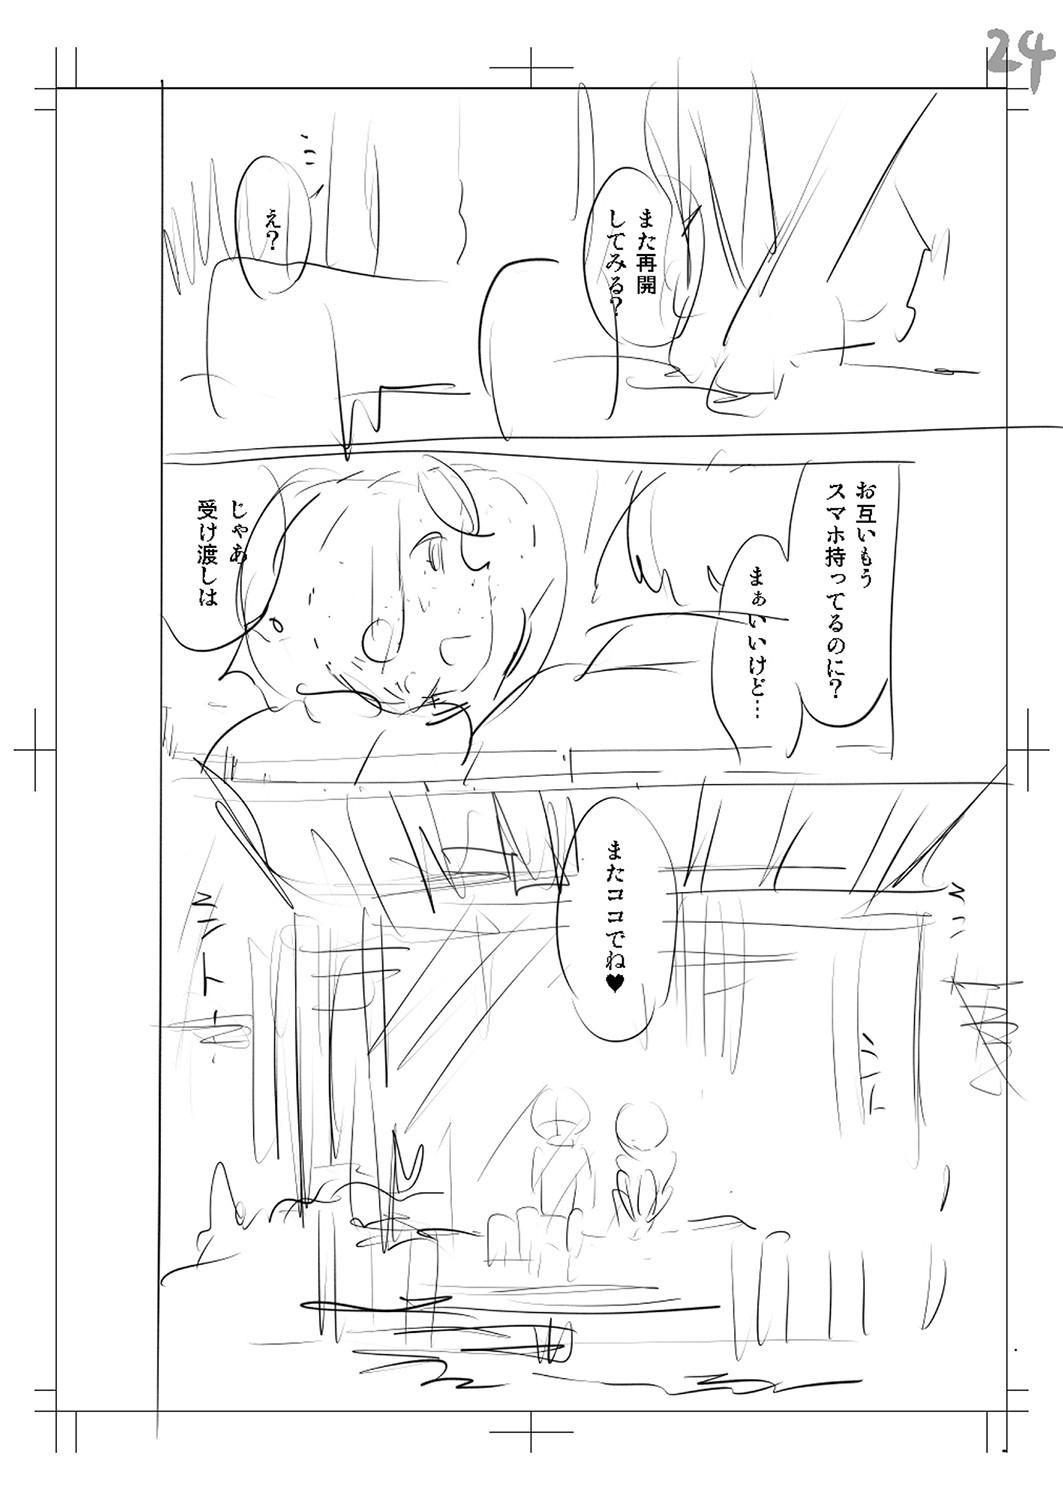 Yamanu Sei e no Koukishin - Unstoppable Curiosity About SEX 254